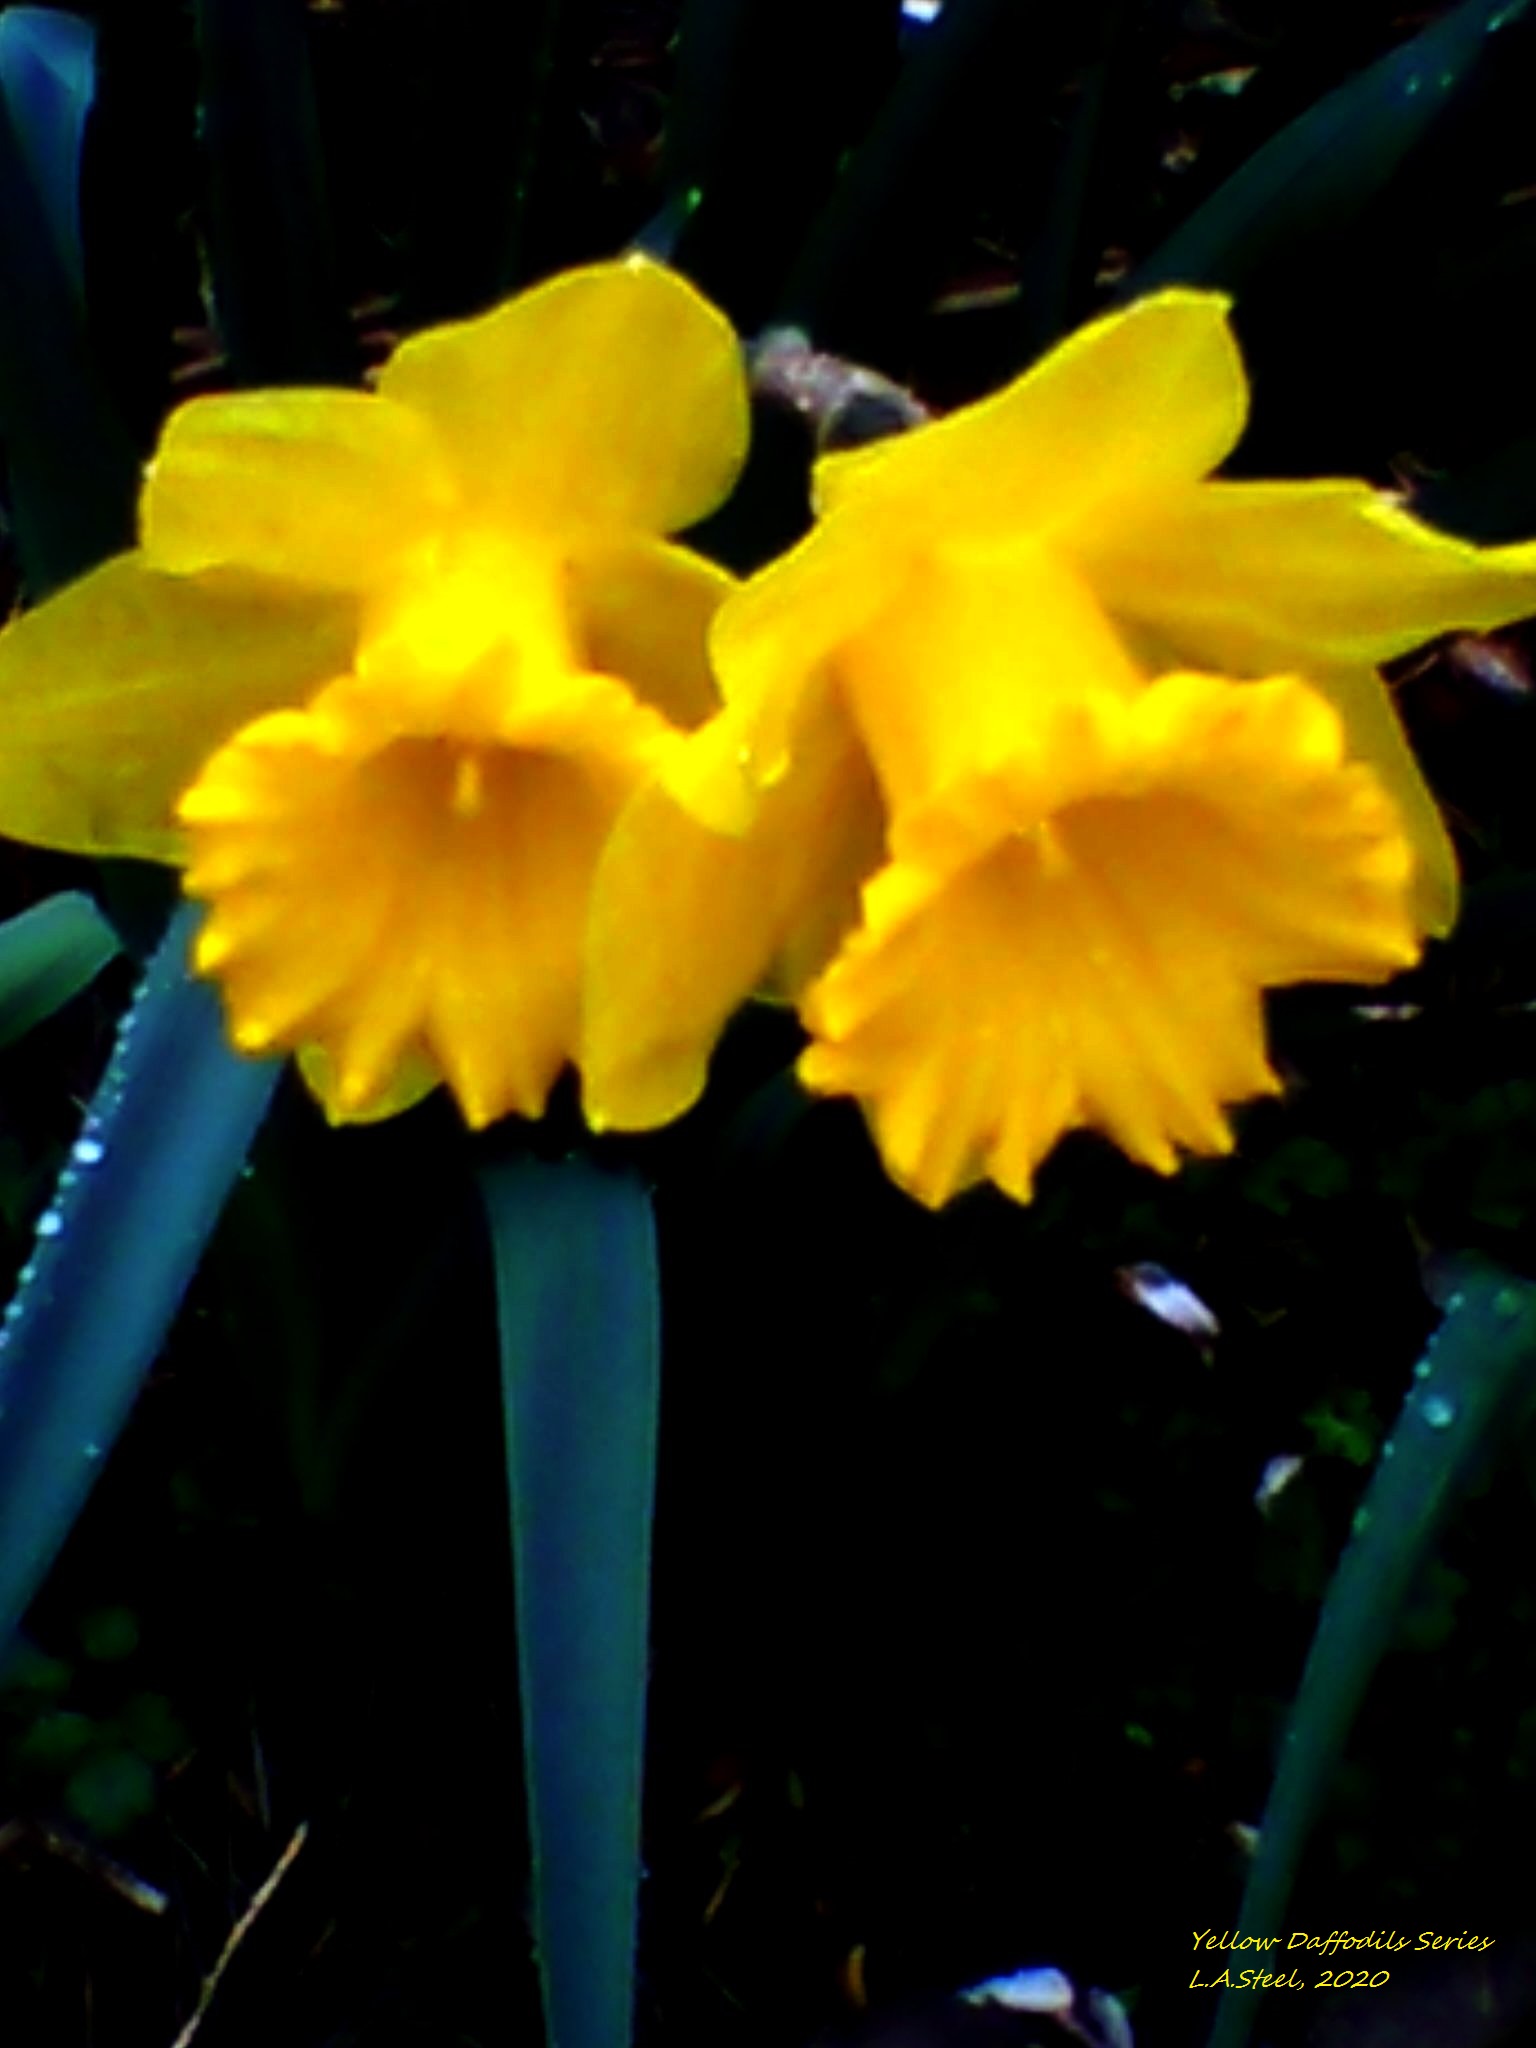 yellow daffodil series 4 2020